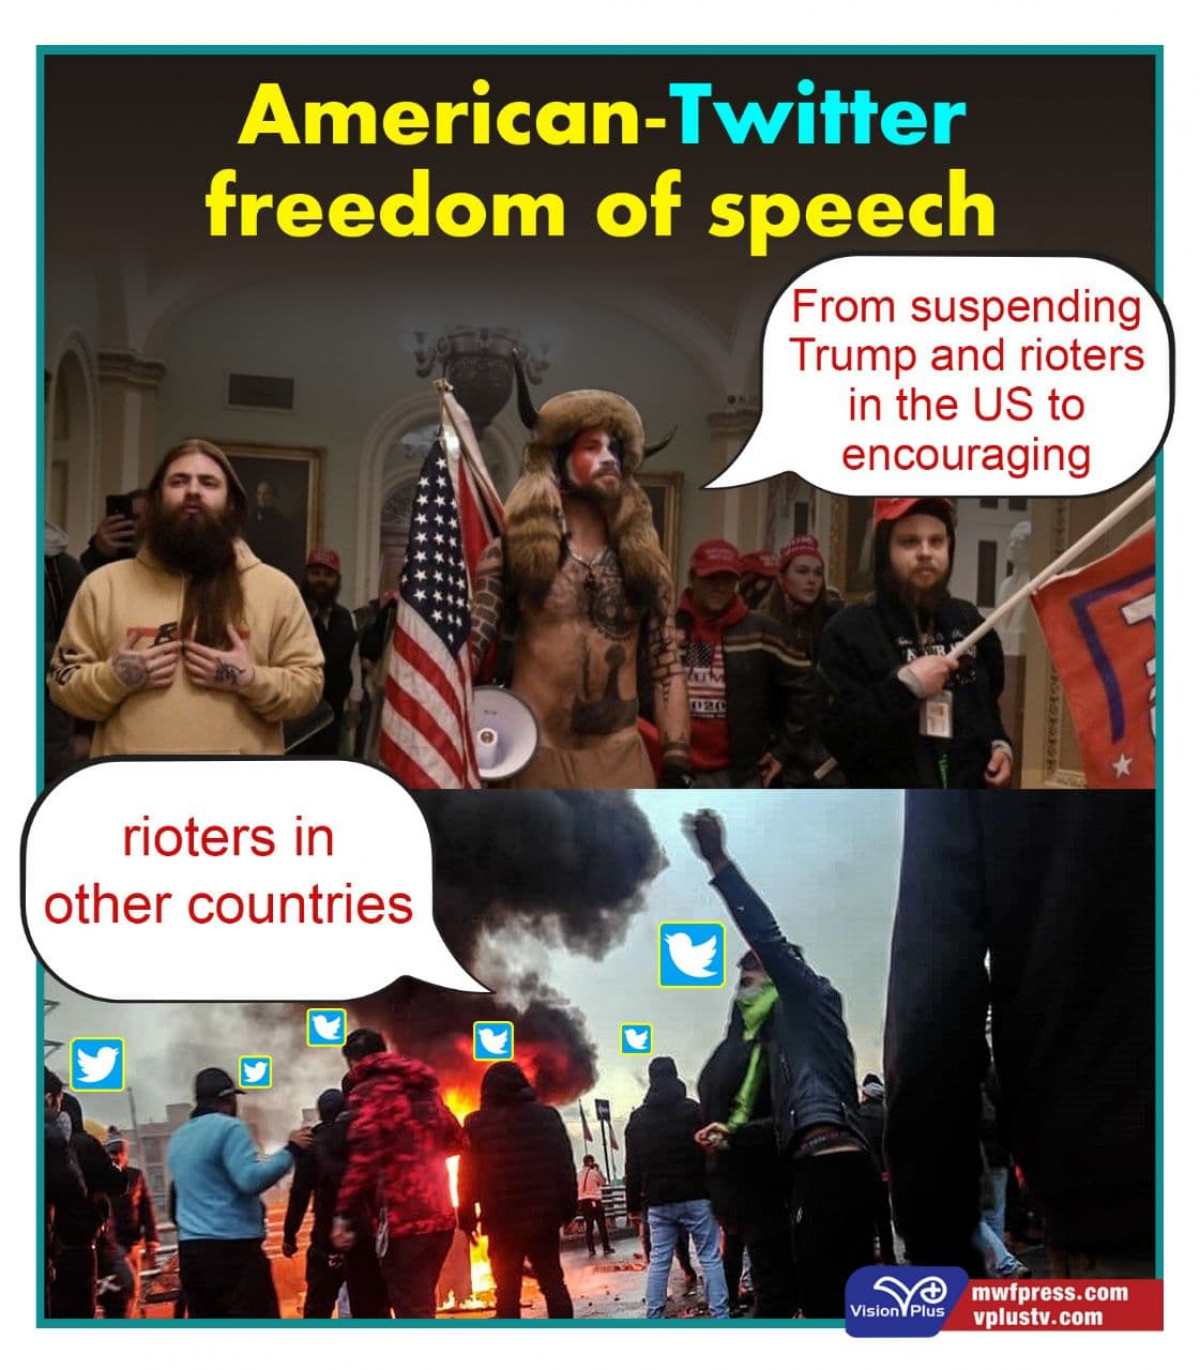 American-Twitter freedom of speech